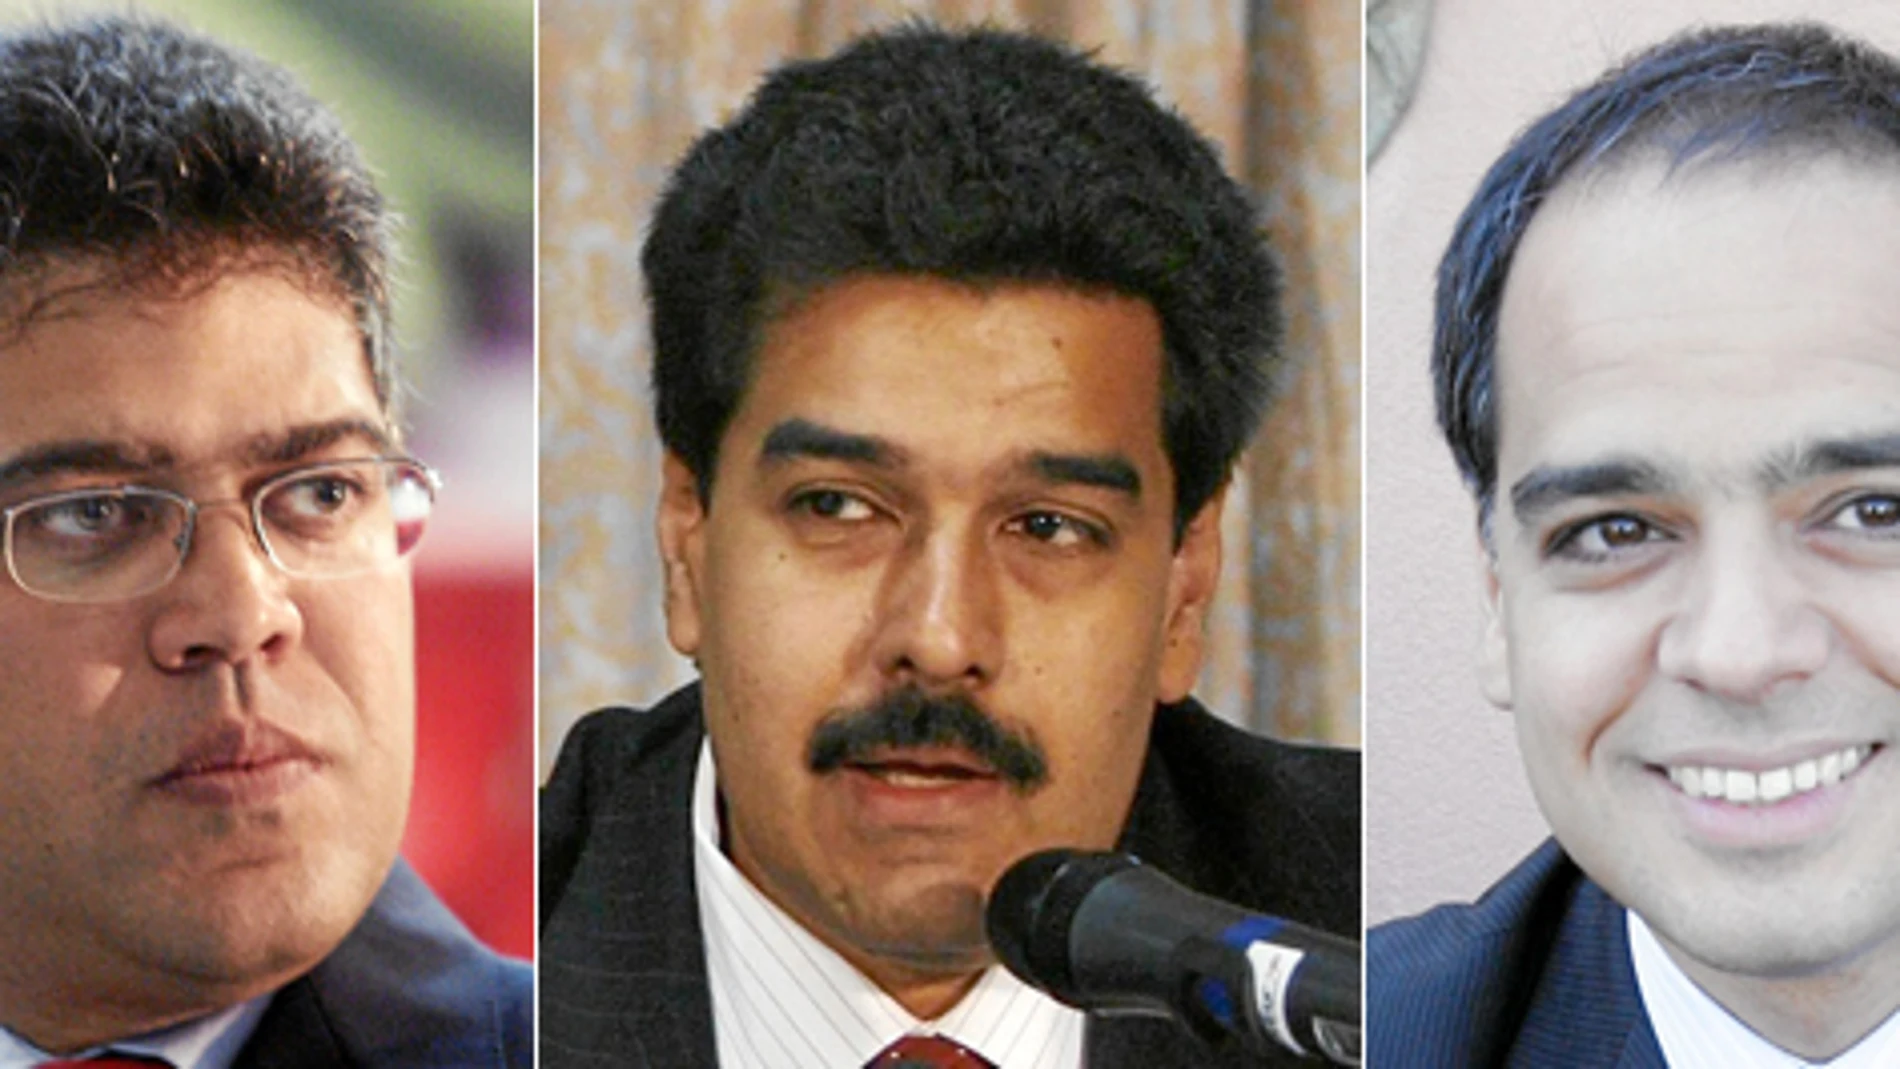 Elías José Jaua, Nicolás Maduro y Andrés Izarra